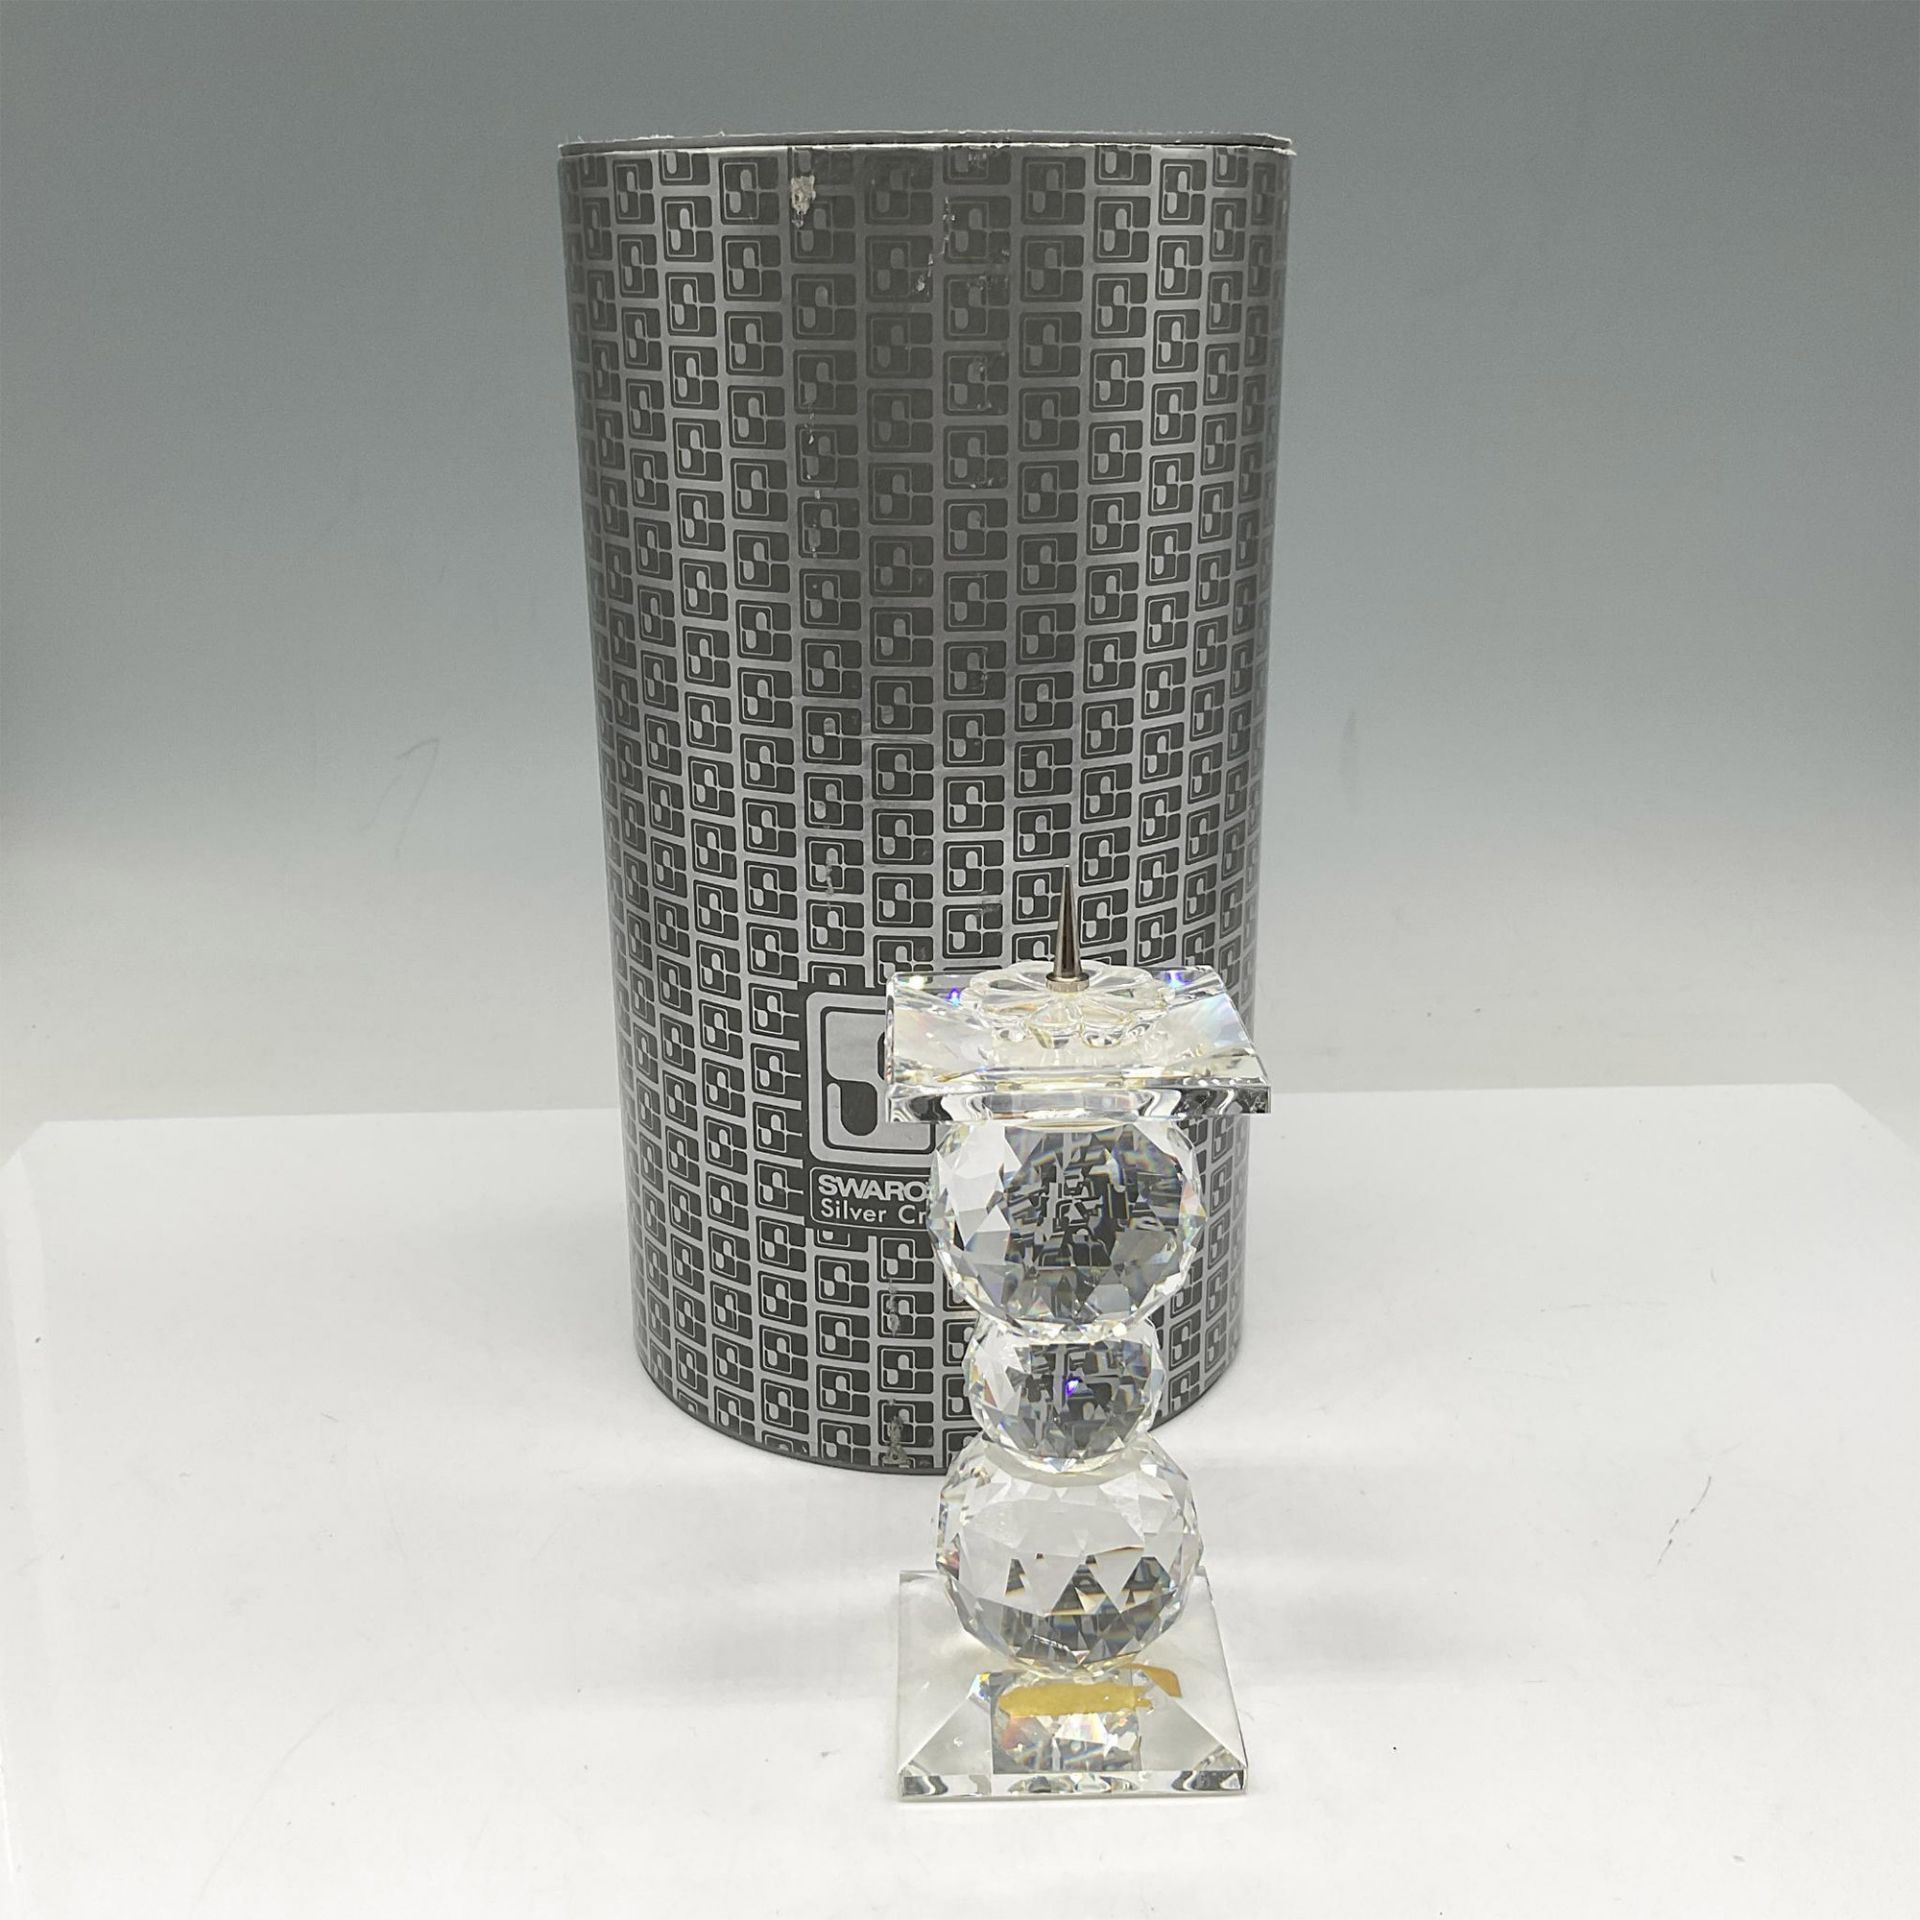 Swarovski Silver Crystal Candle Holder - Image 4 of 4